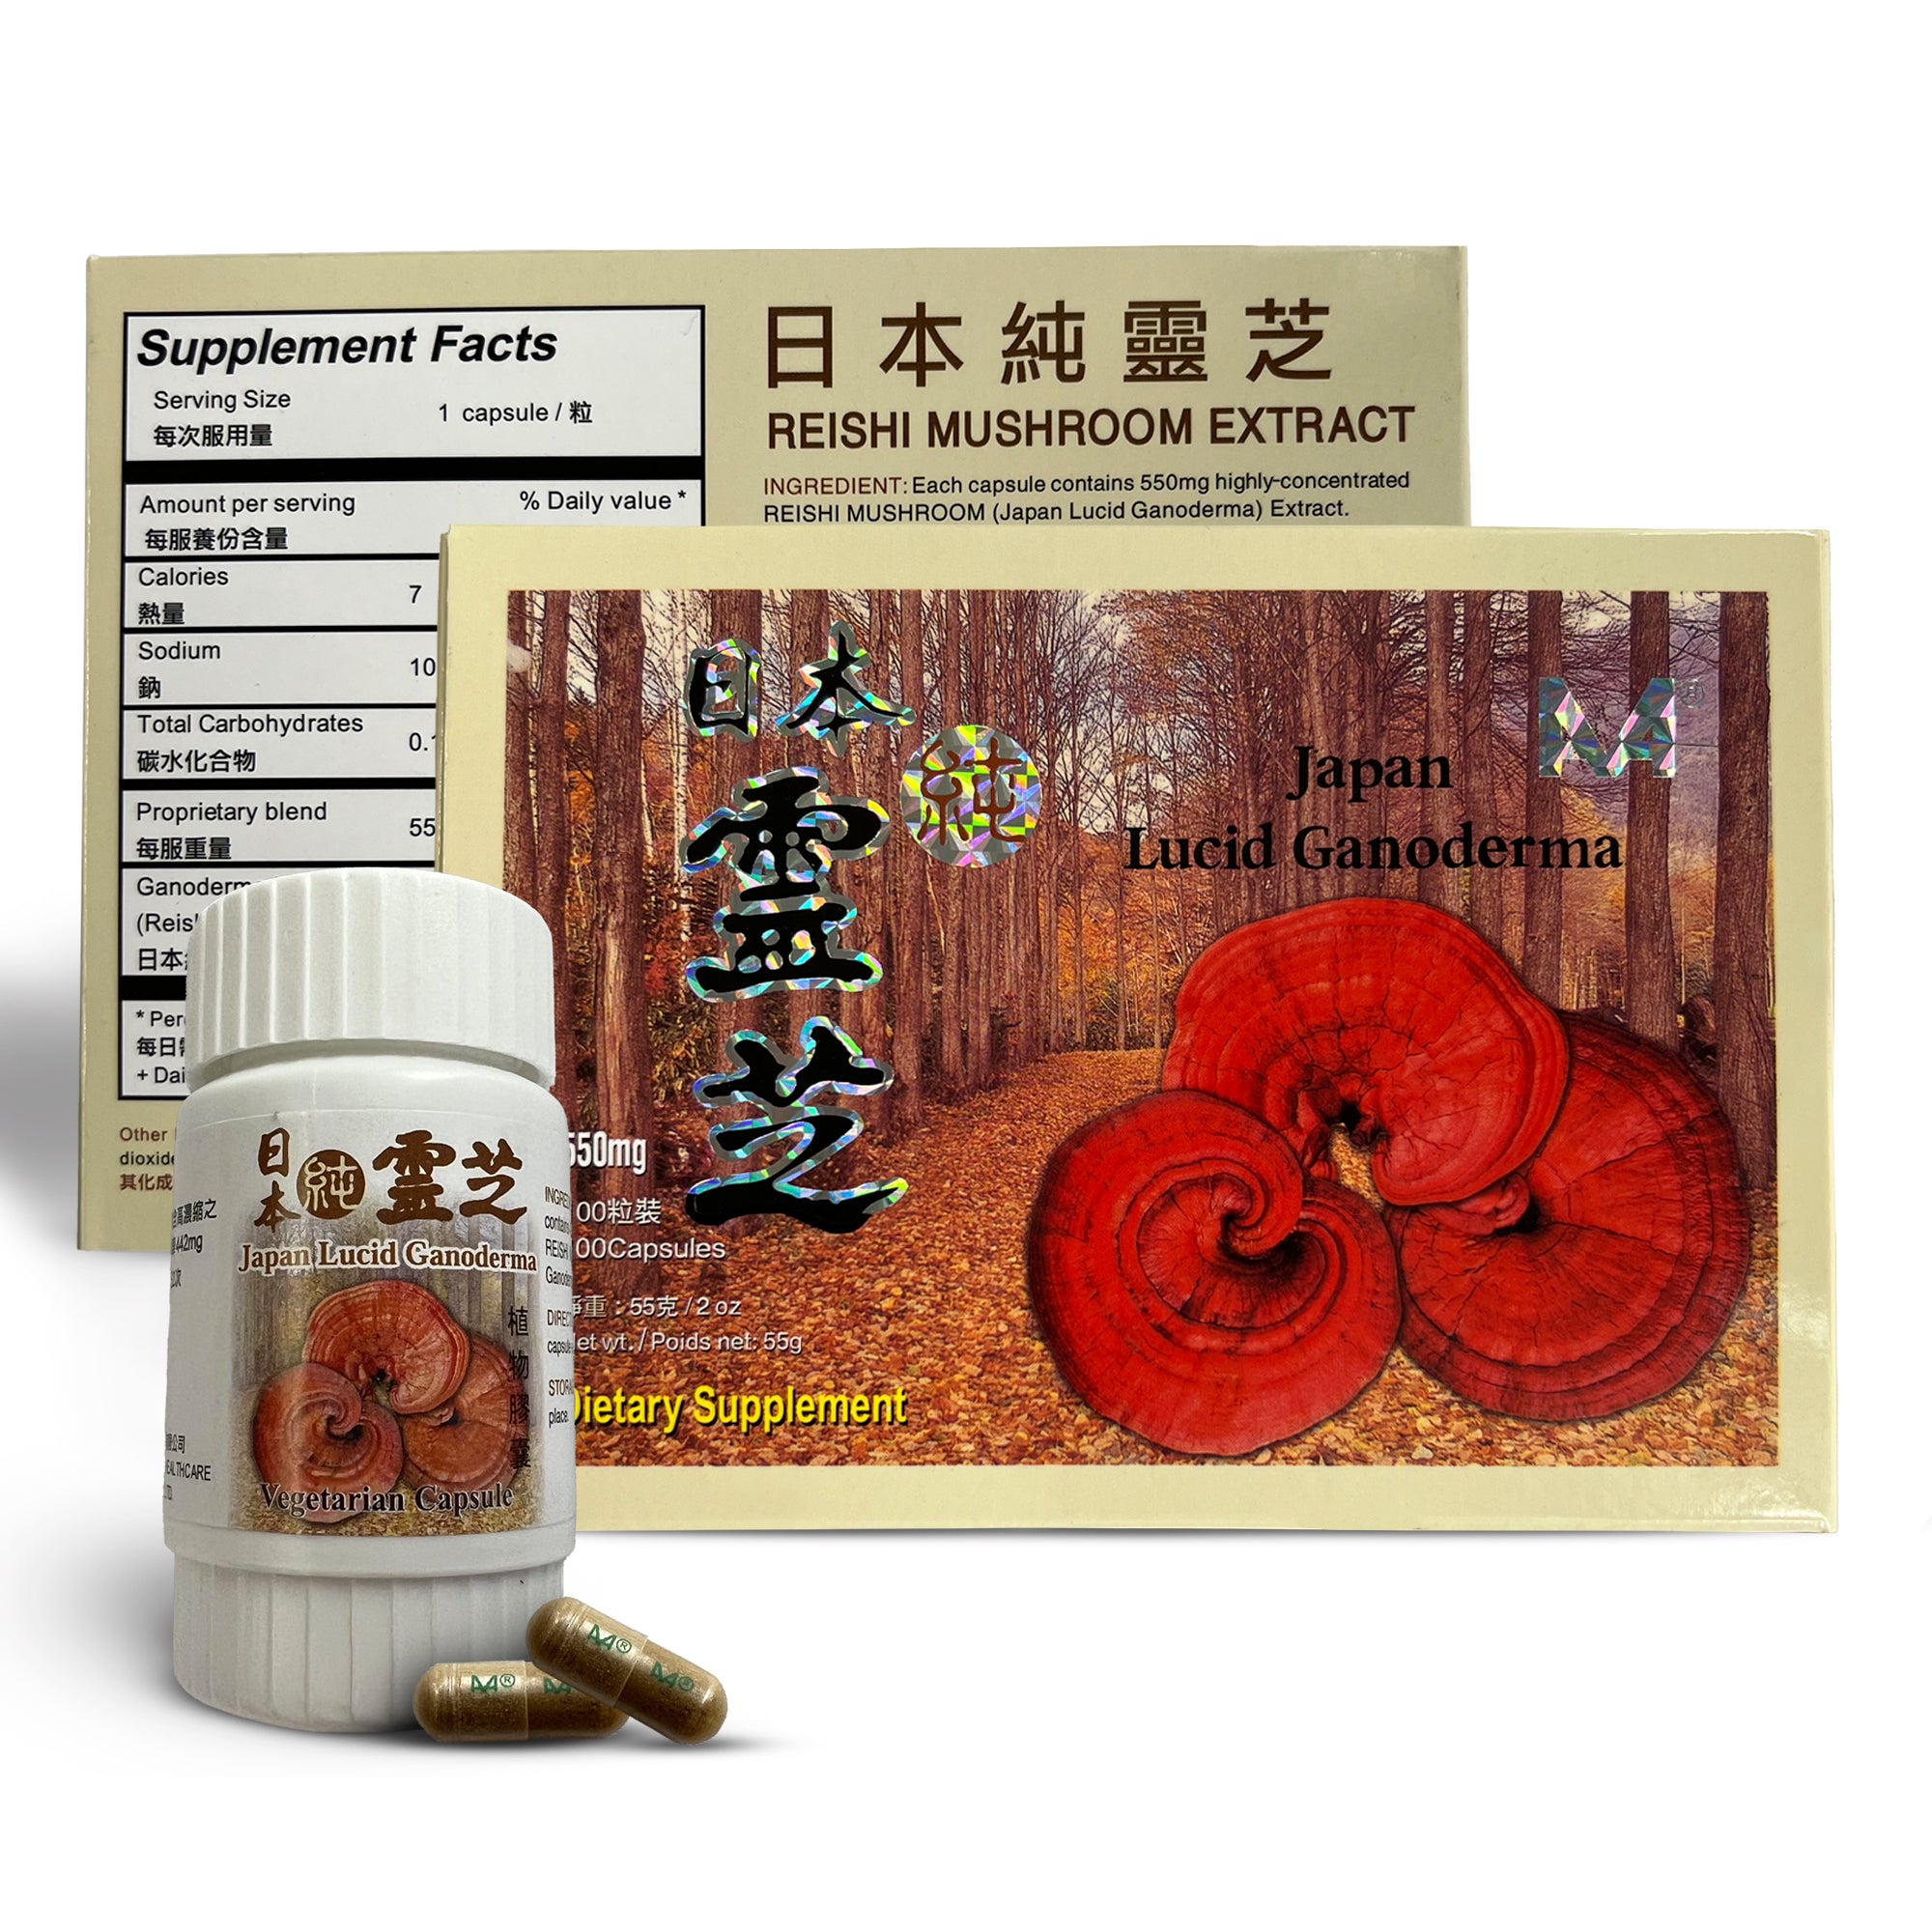 Japanese Reishi Mushrooms for Dogs - 50 Vegetarian Capsules per Bottle